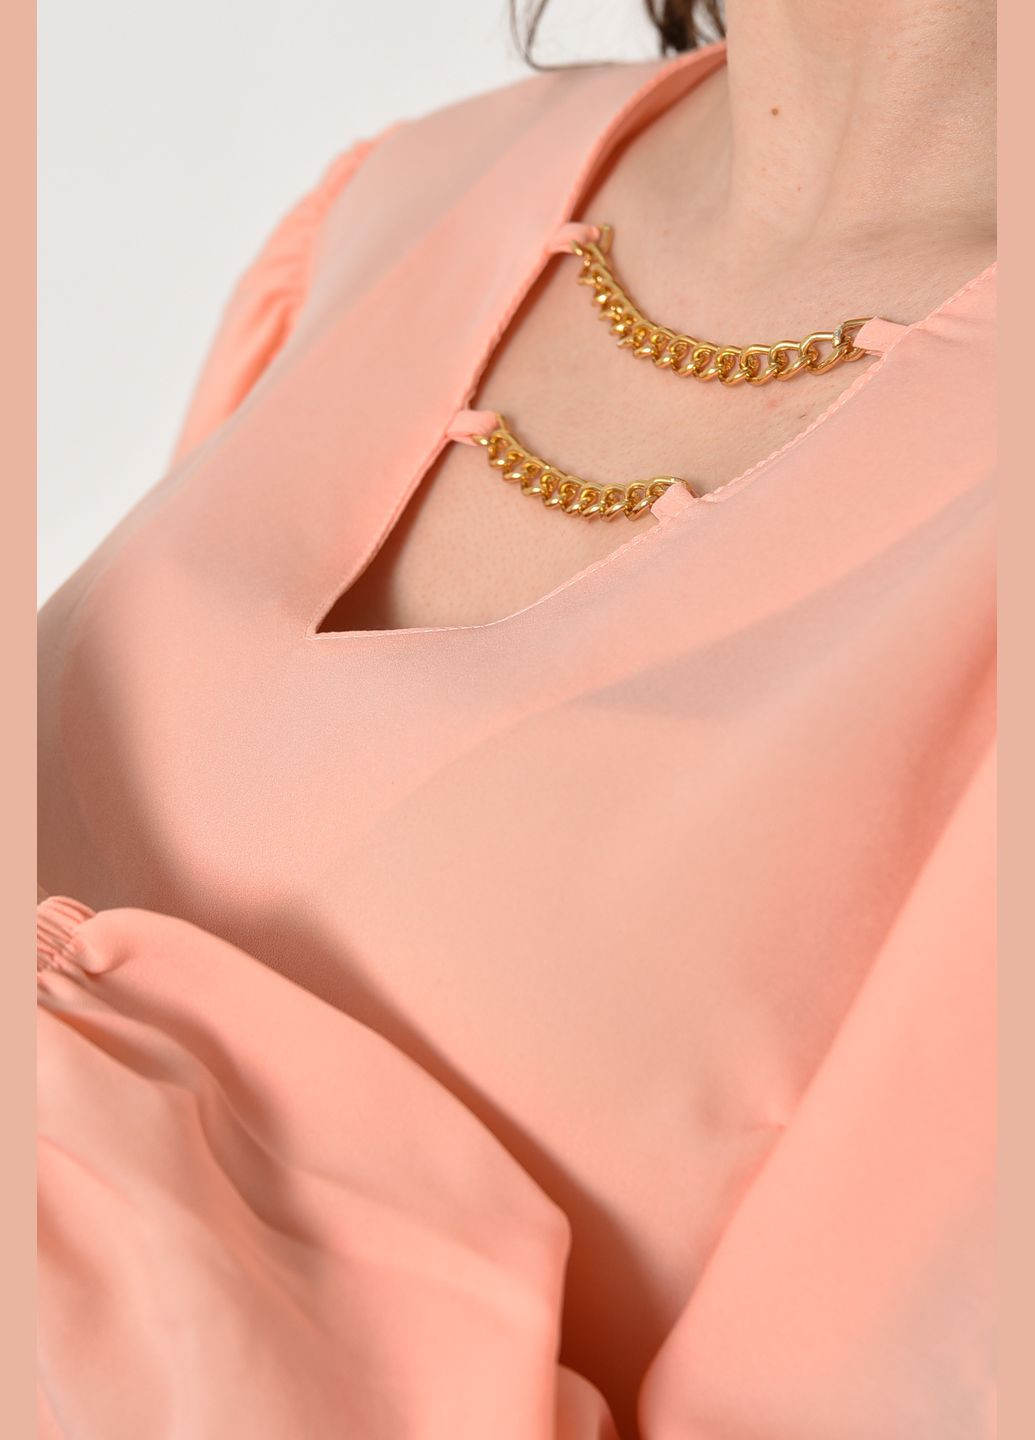 Персиковая блузка женская персикового цвета с баской Let's Shop